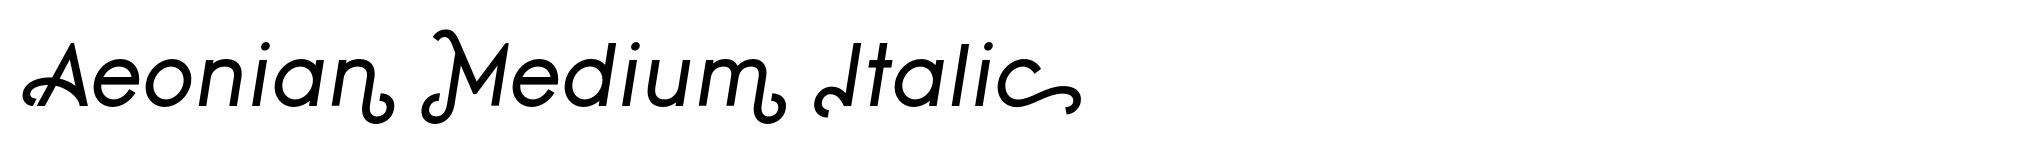 Aeonian Medium Italic image